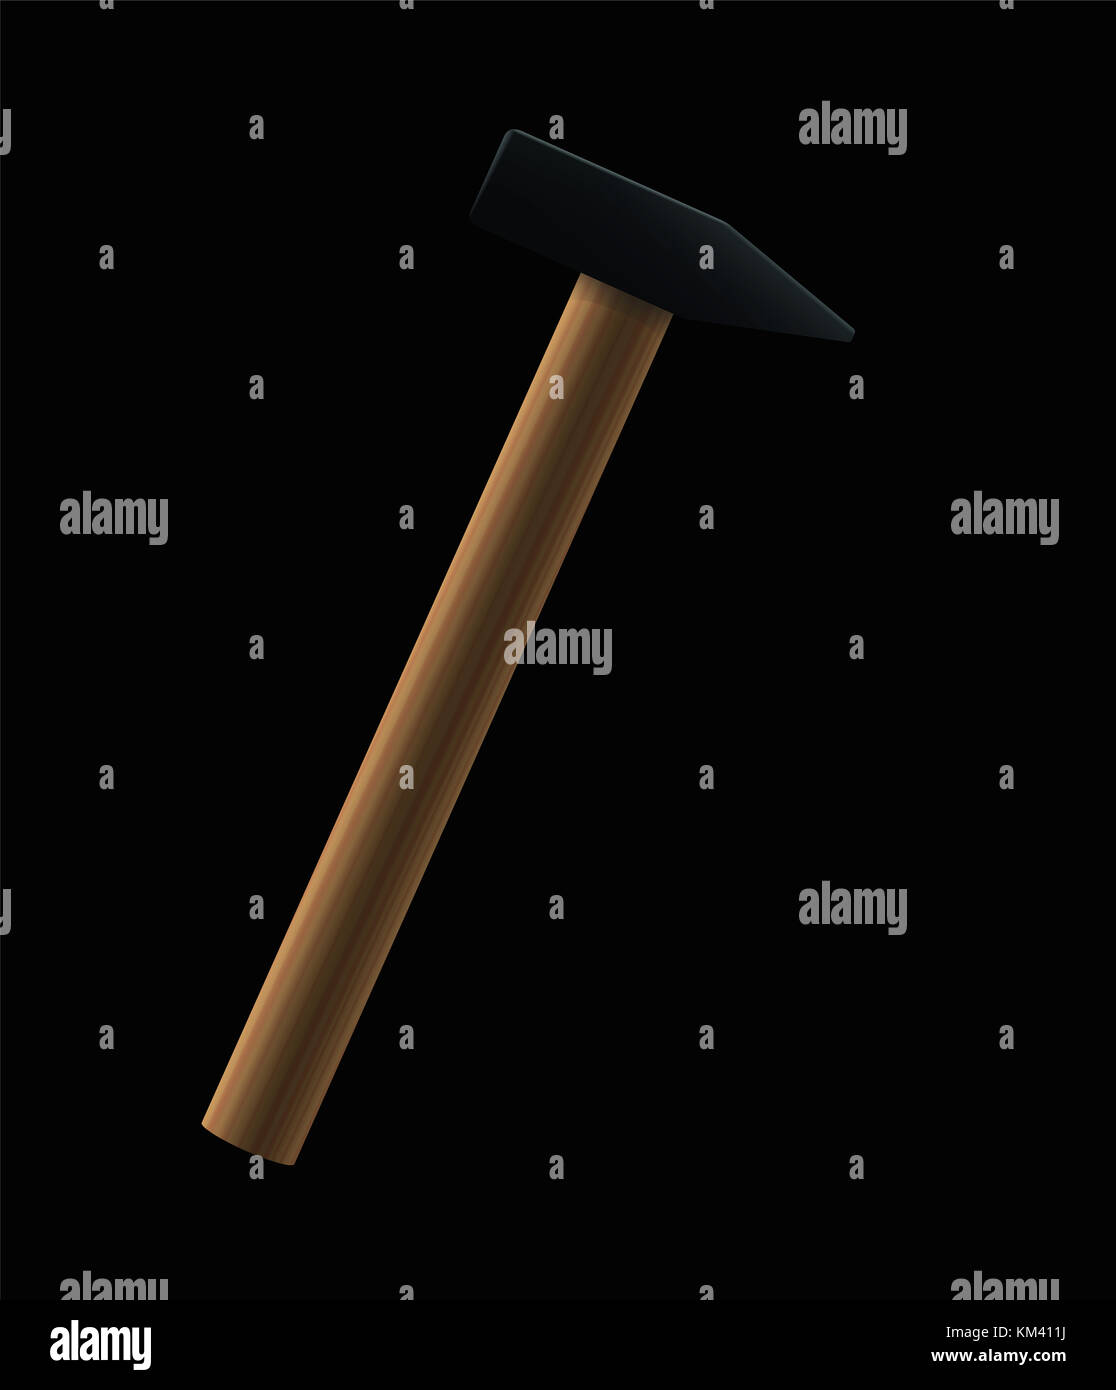 Hammer auf schwarzem Hintergrund - grundlegende Hand Werkzeug mit Griff aus Holz und Eisen Kopf - Abbildung auf schwarzen Hintergrund. Stockfoto